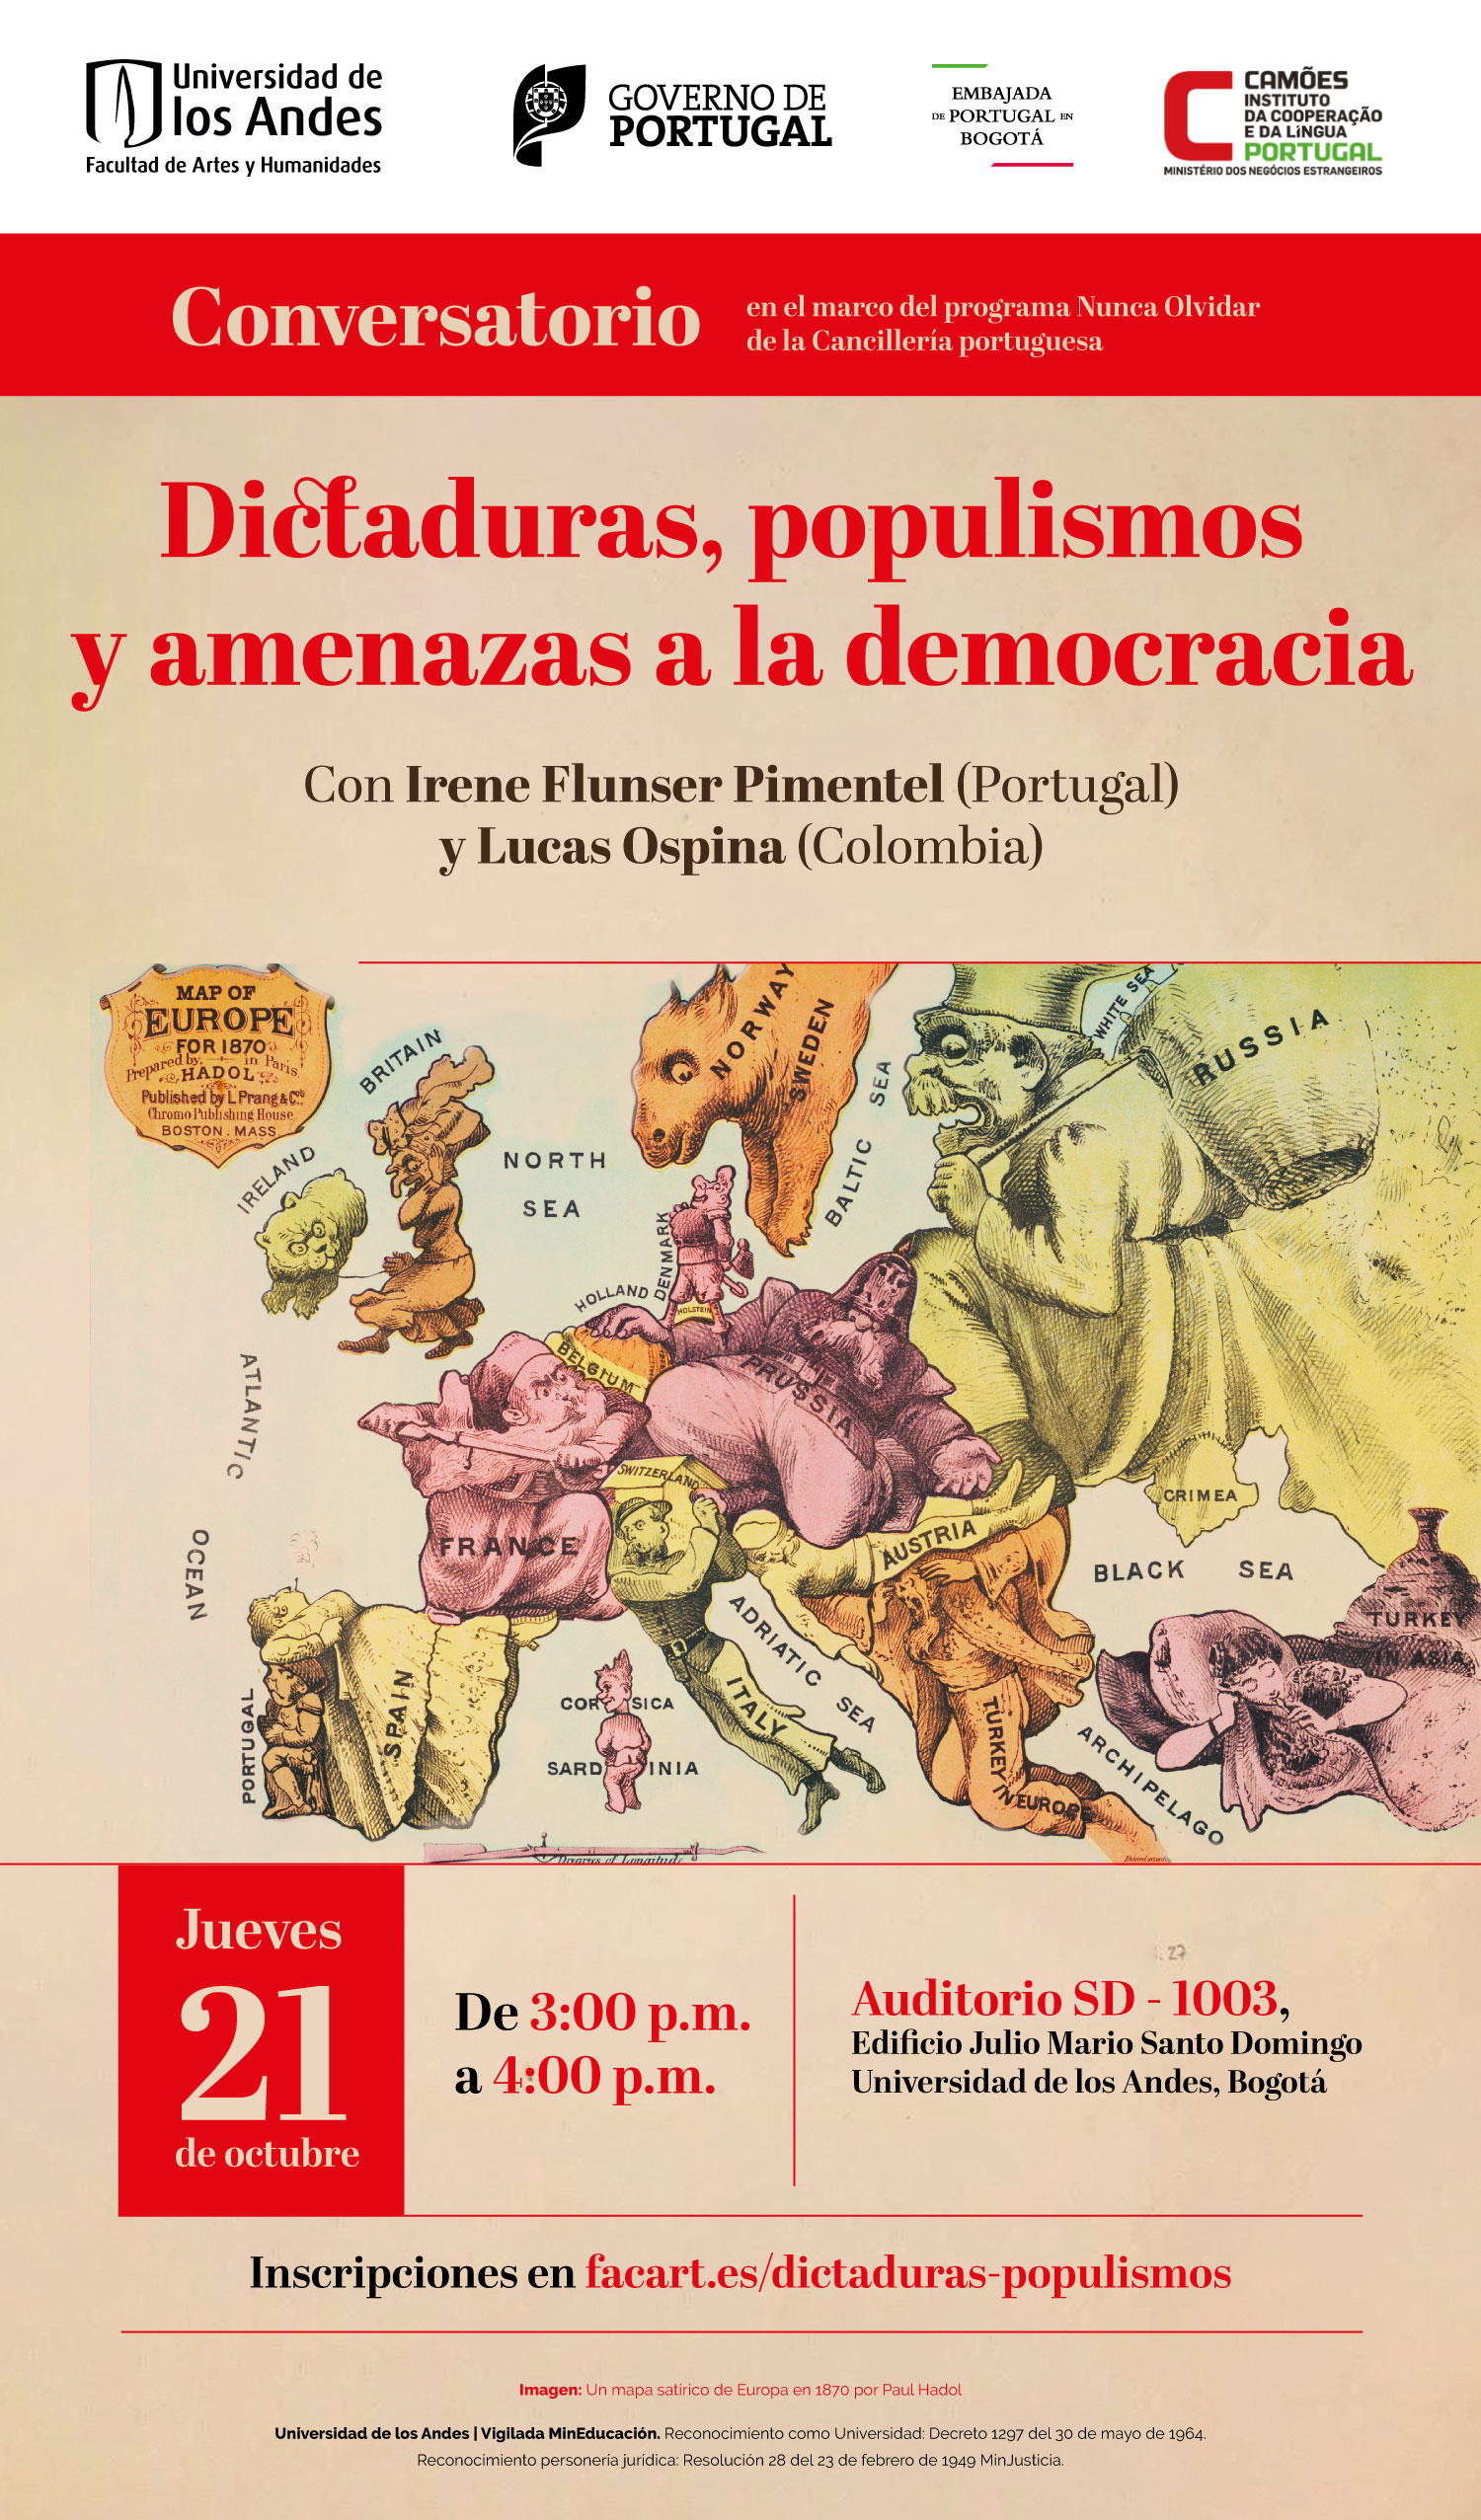 Dictaduras, populismos y amenazas a la democracia: Con Irene Flunser Pimentel (Portugal) y Lucas Ospina (Colombia)